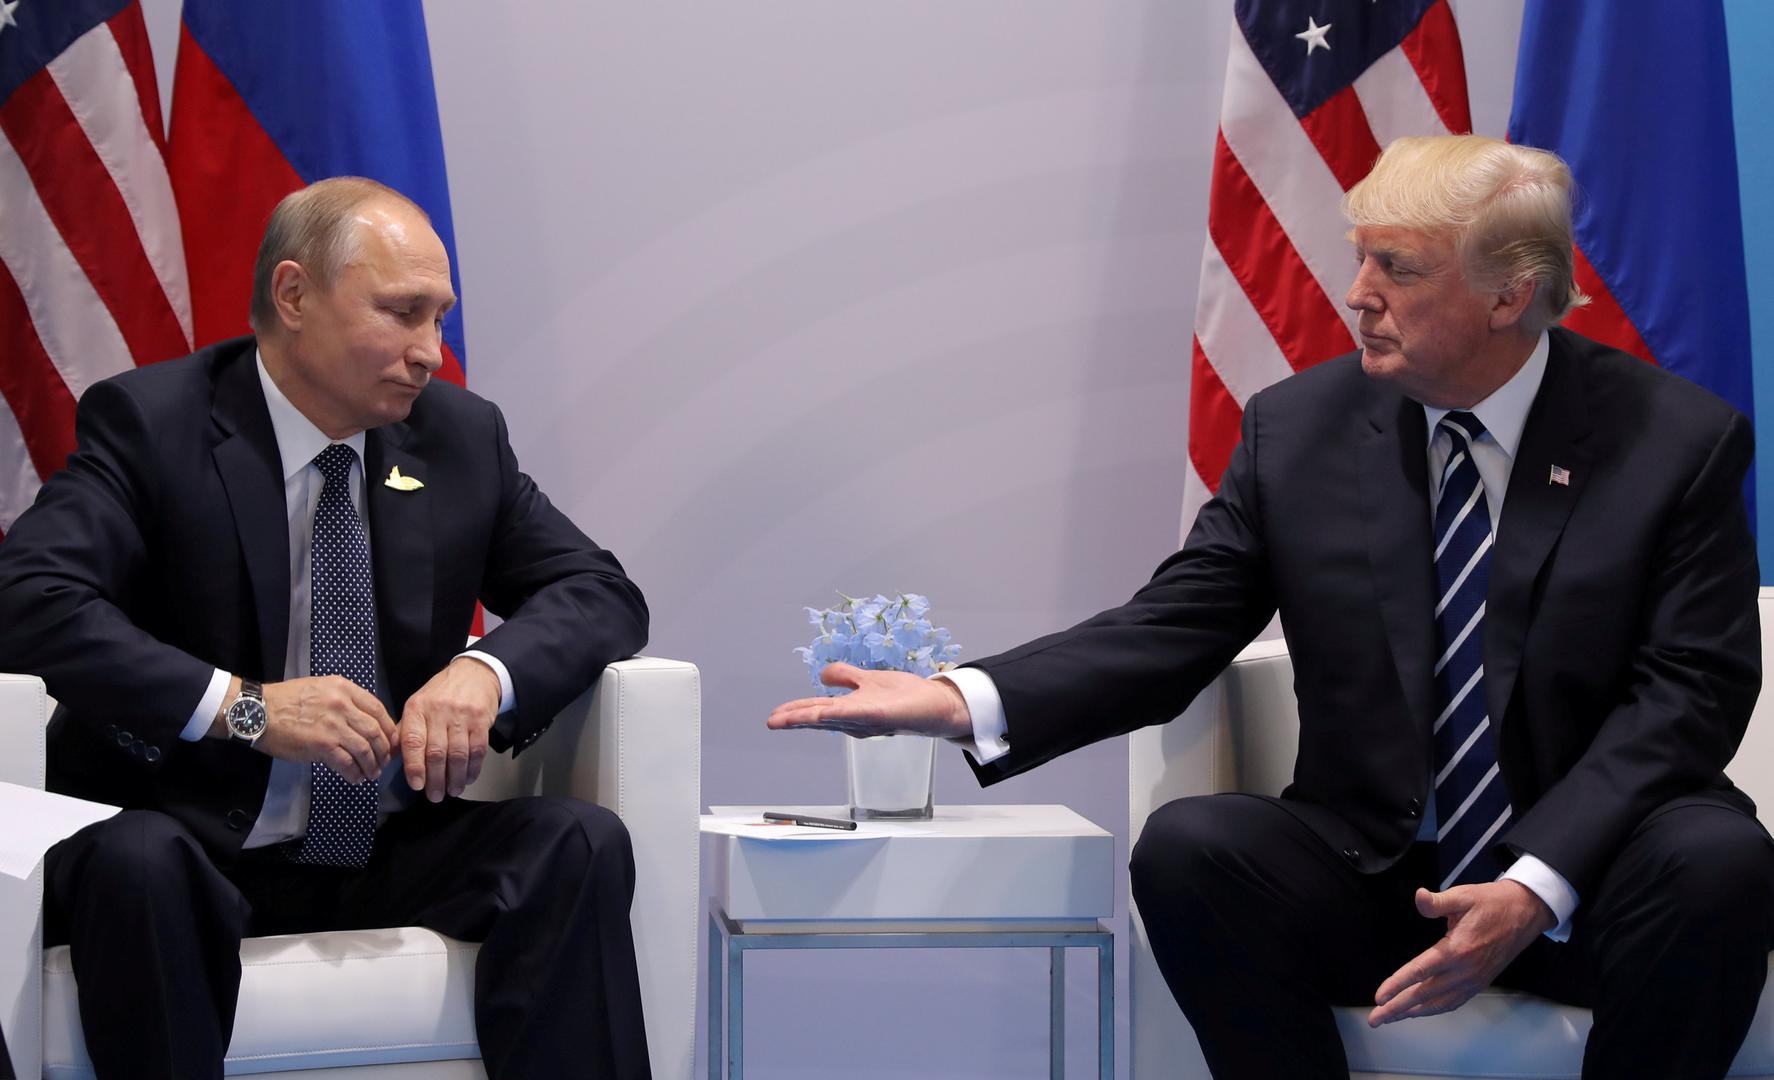 Američki predsjednik Donald Trump s ruskim predsjednikom Vladimirom Putinom na bilateralnom sastanku na summitu G20 u Njemačkoj u srpnju 2017.  